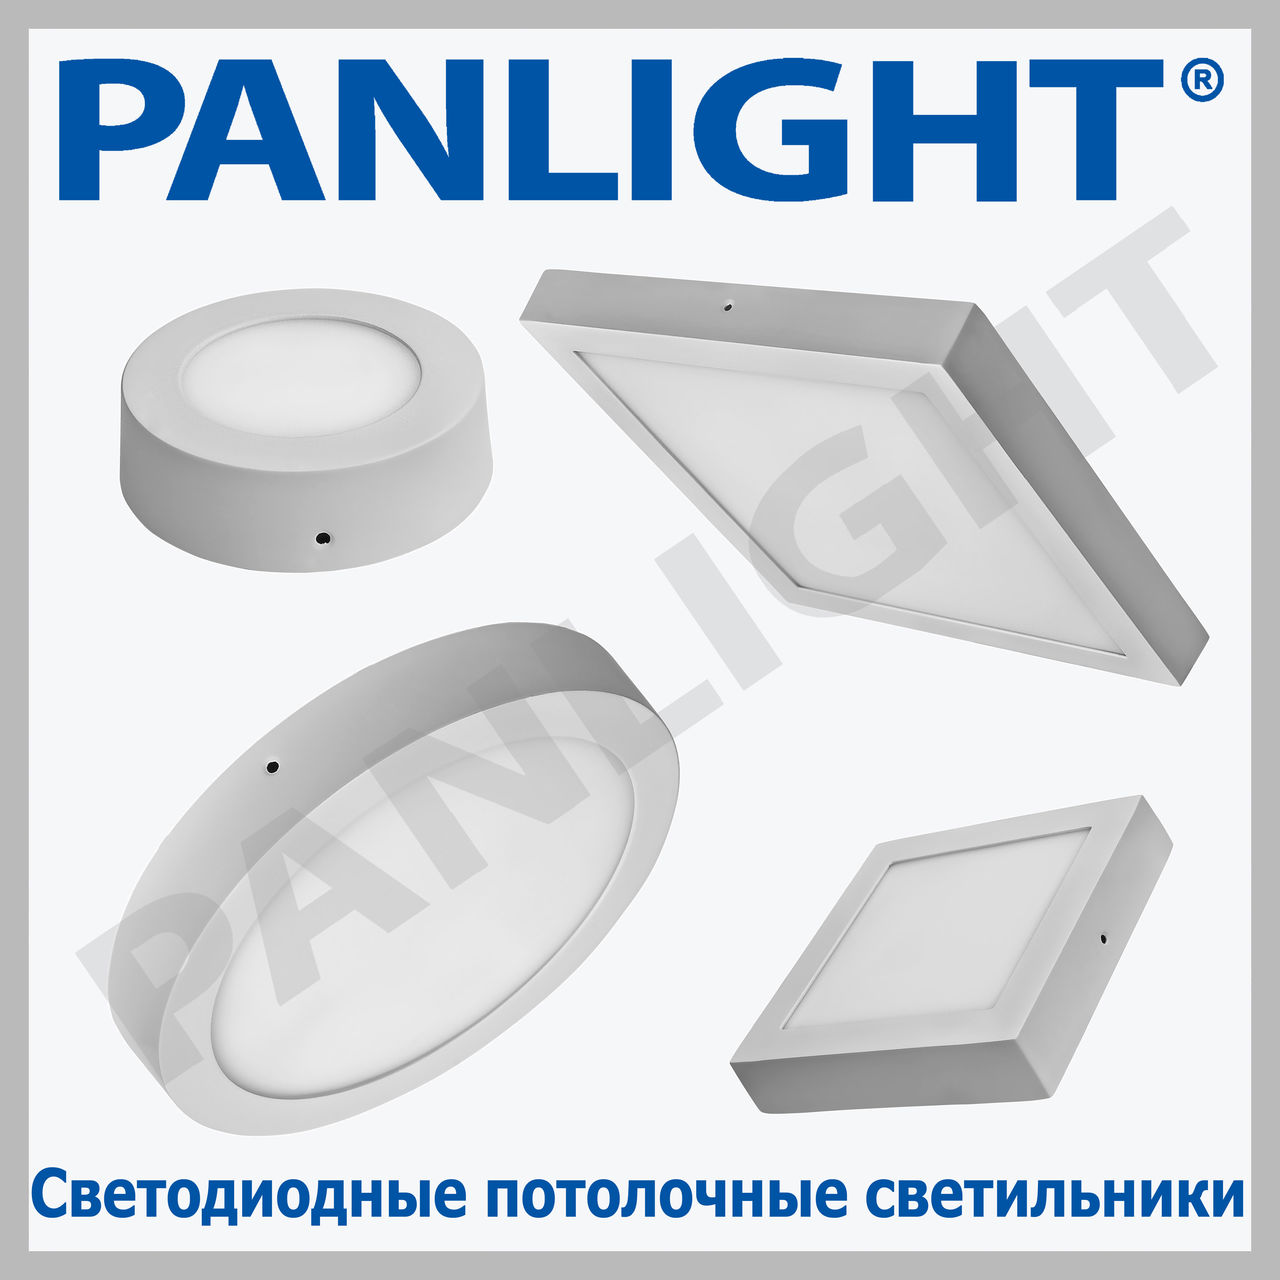 KosoomКоллекция светодиодных плоских панельных светильников